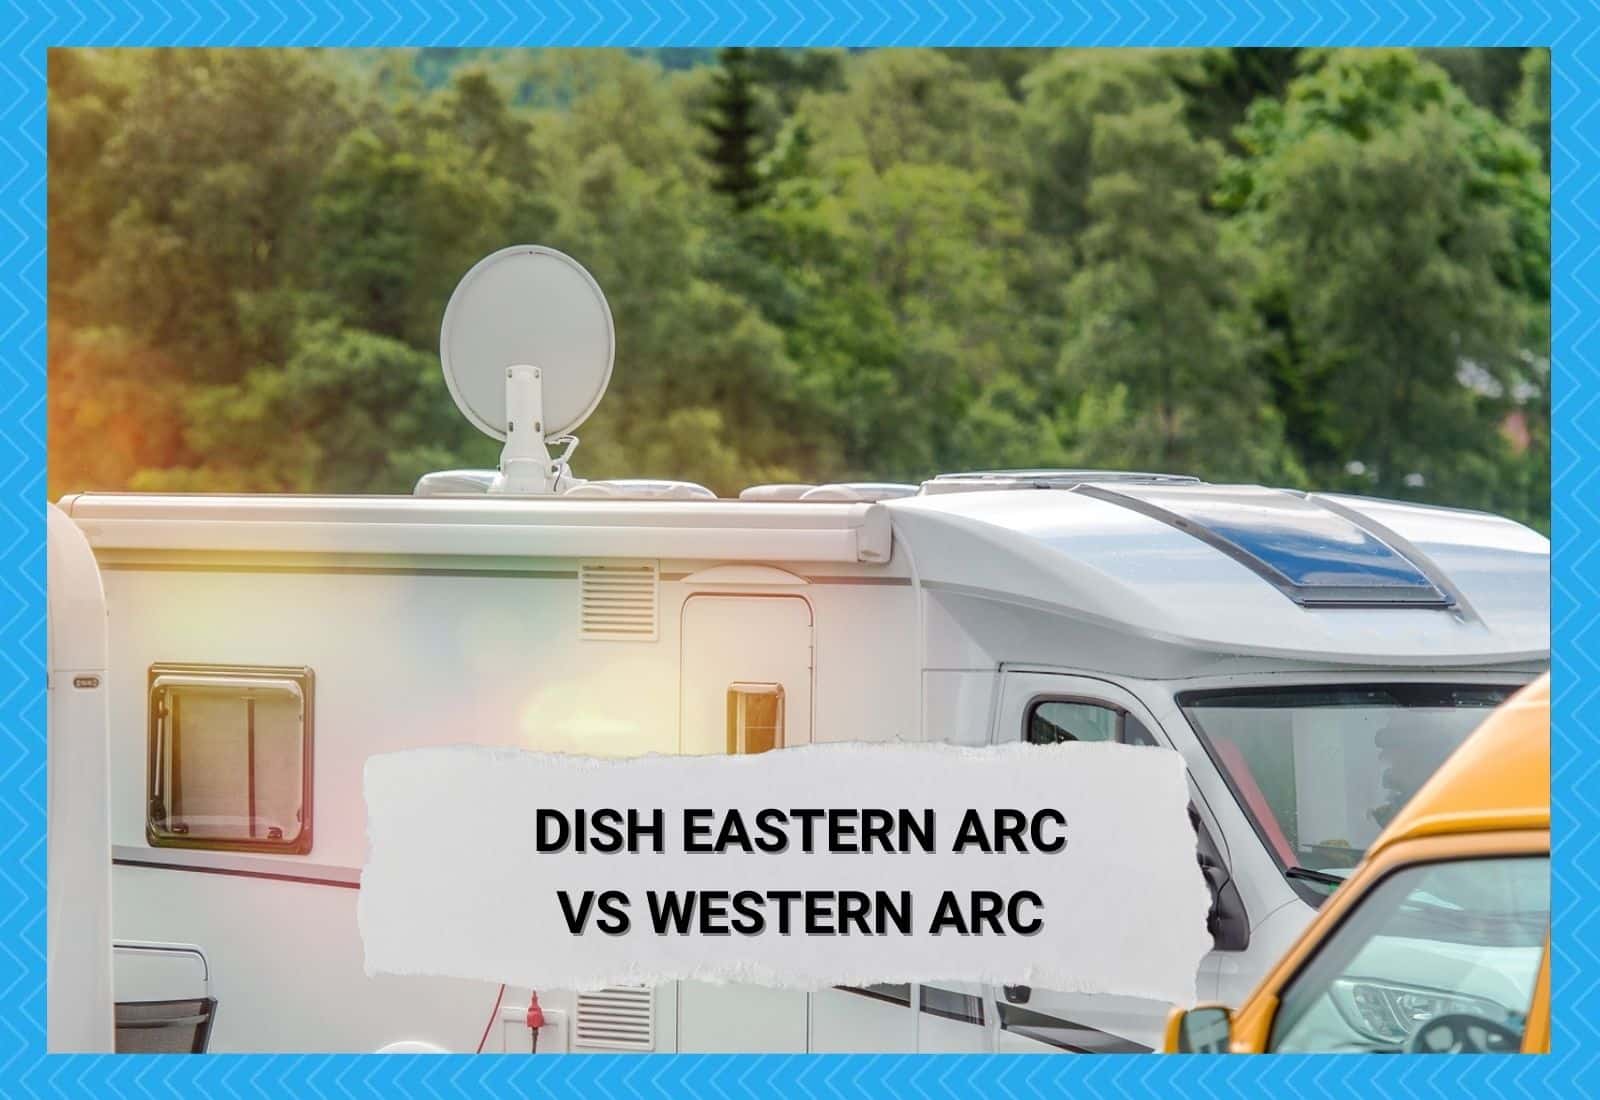 Dish Eastern Arc vs Dish Western Arc